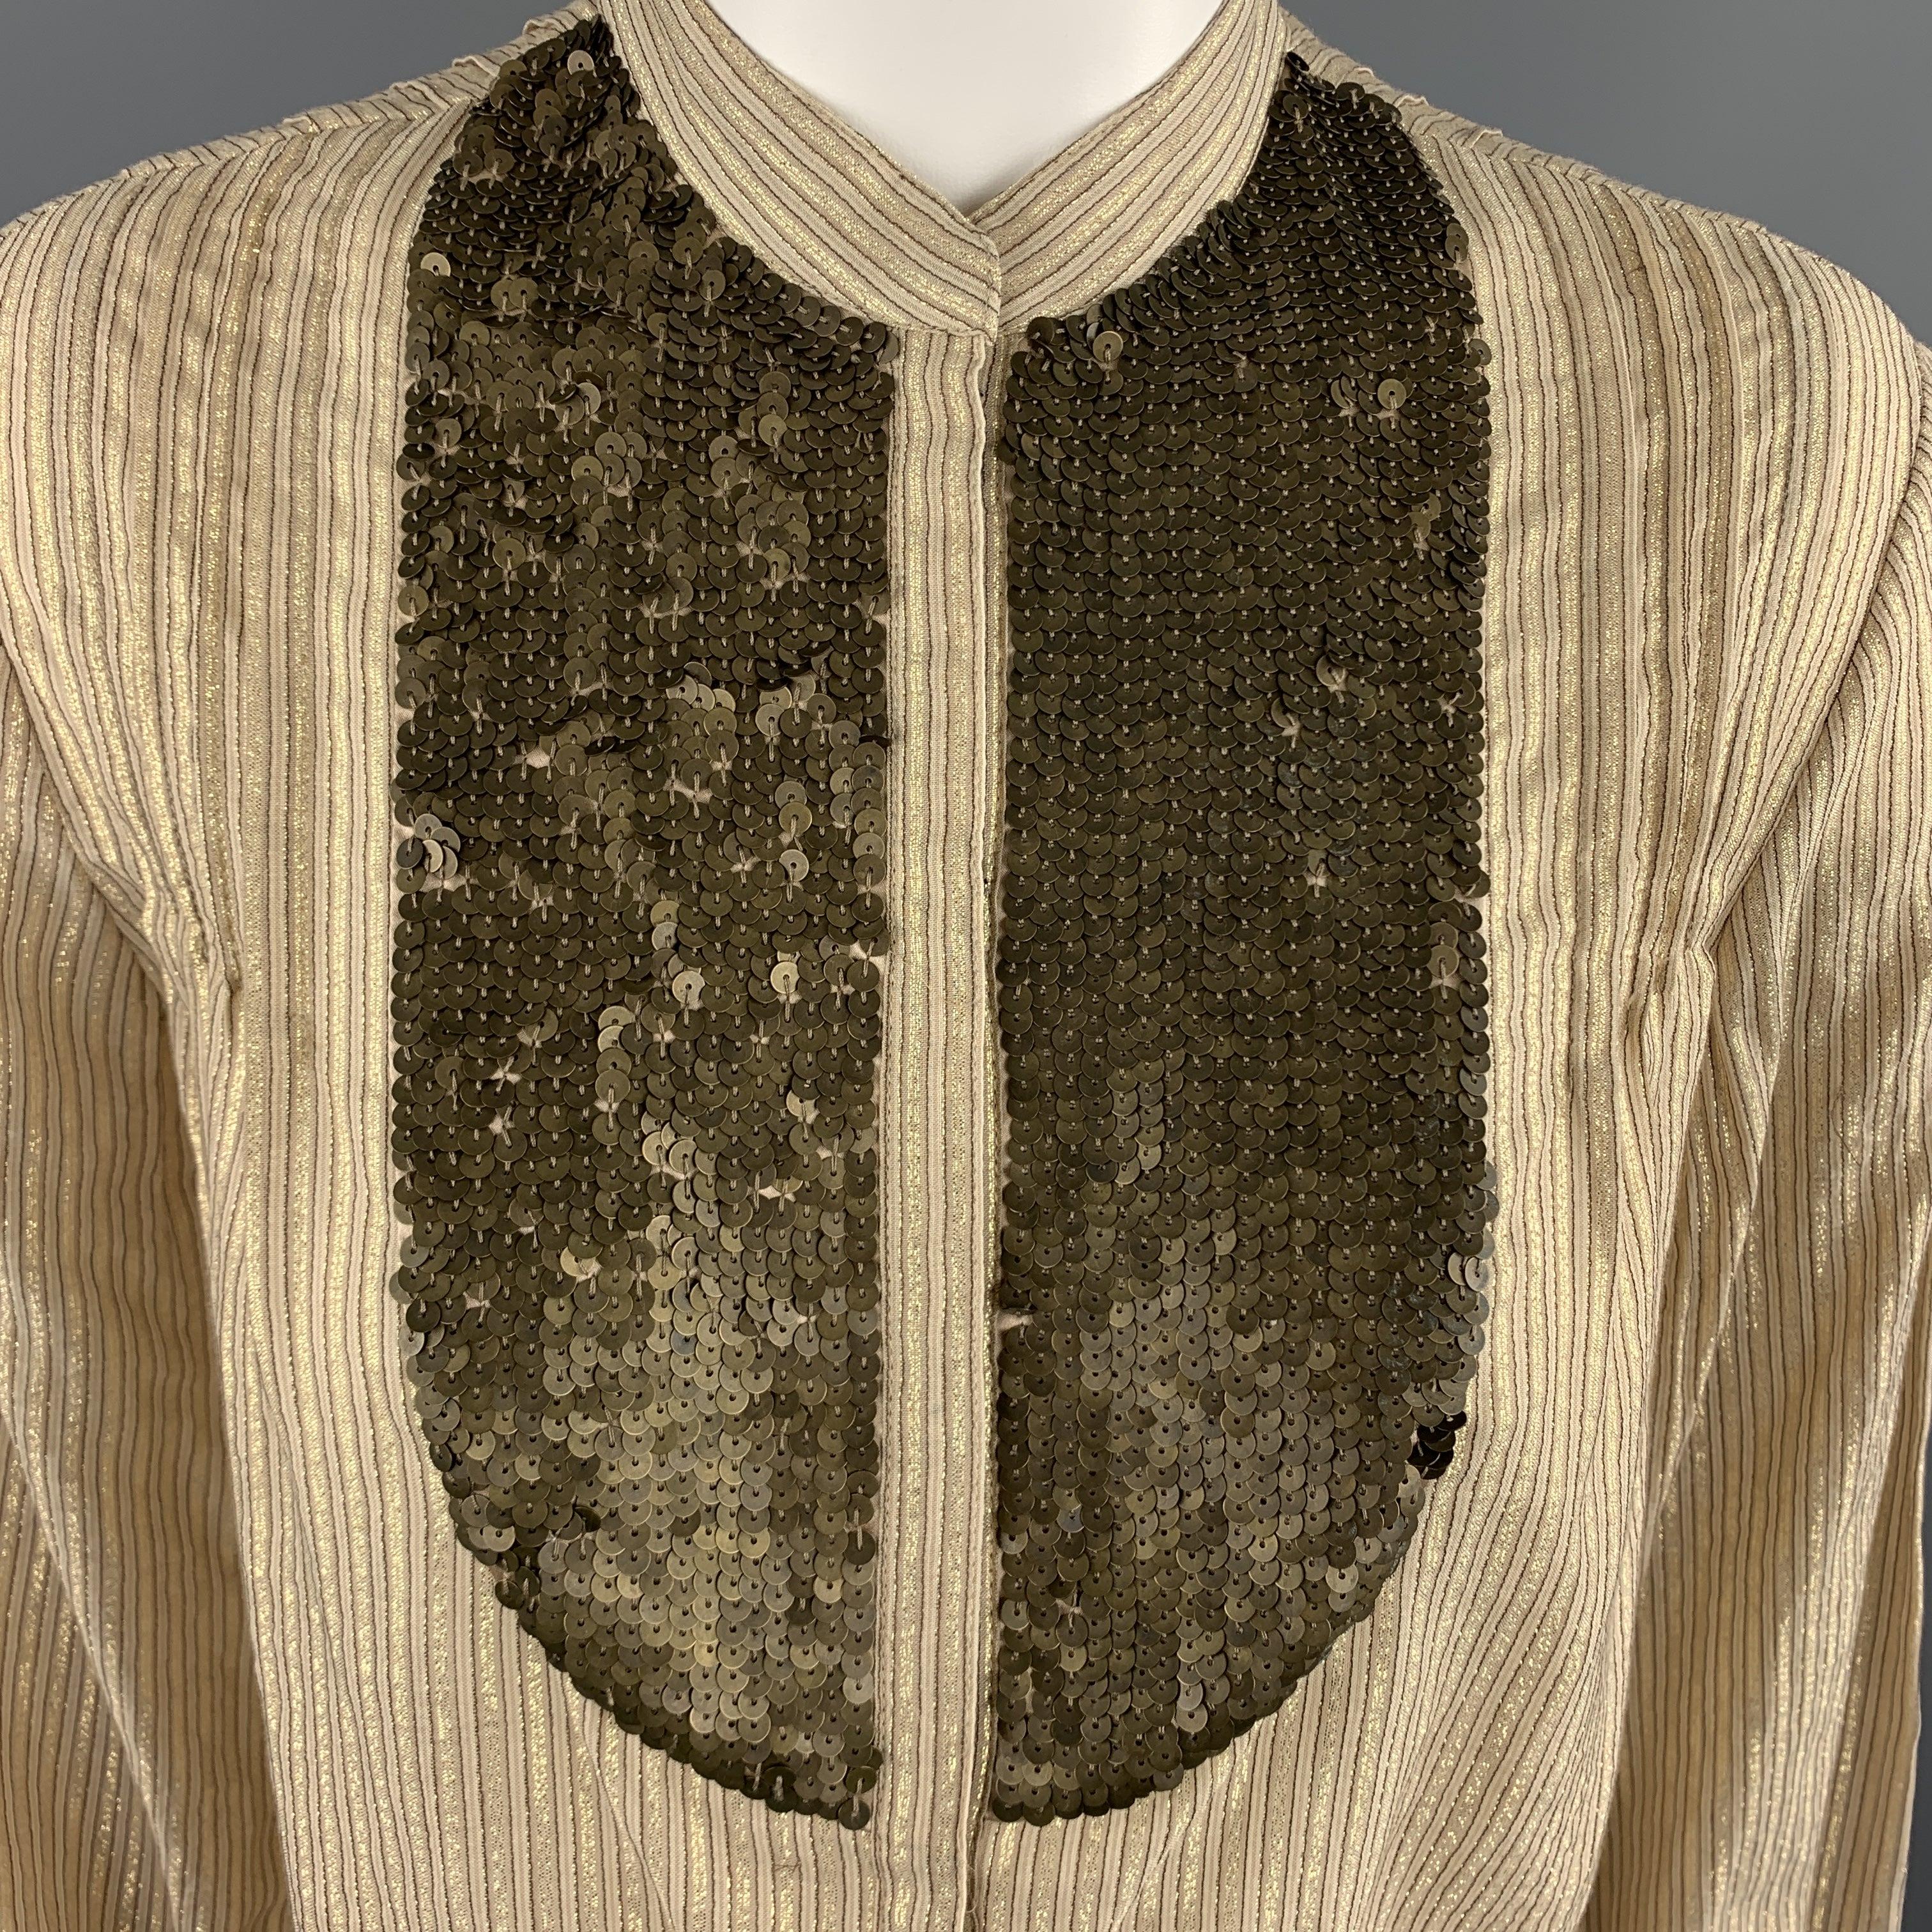 La blouse 3.1 PHILLIP LIM est en coton rayé Lurex métallisé doré. Elle est dotée d'un col Nehru, d'une patte de boutonnage cachée et d'une fermeture à boutons-pression sur le devant, ainsi que d'un plastron à paillettes.
Excellent
Etat d'occasion.